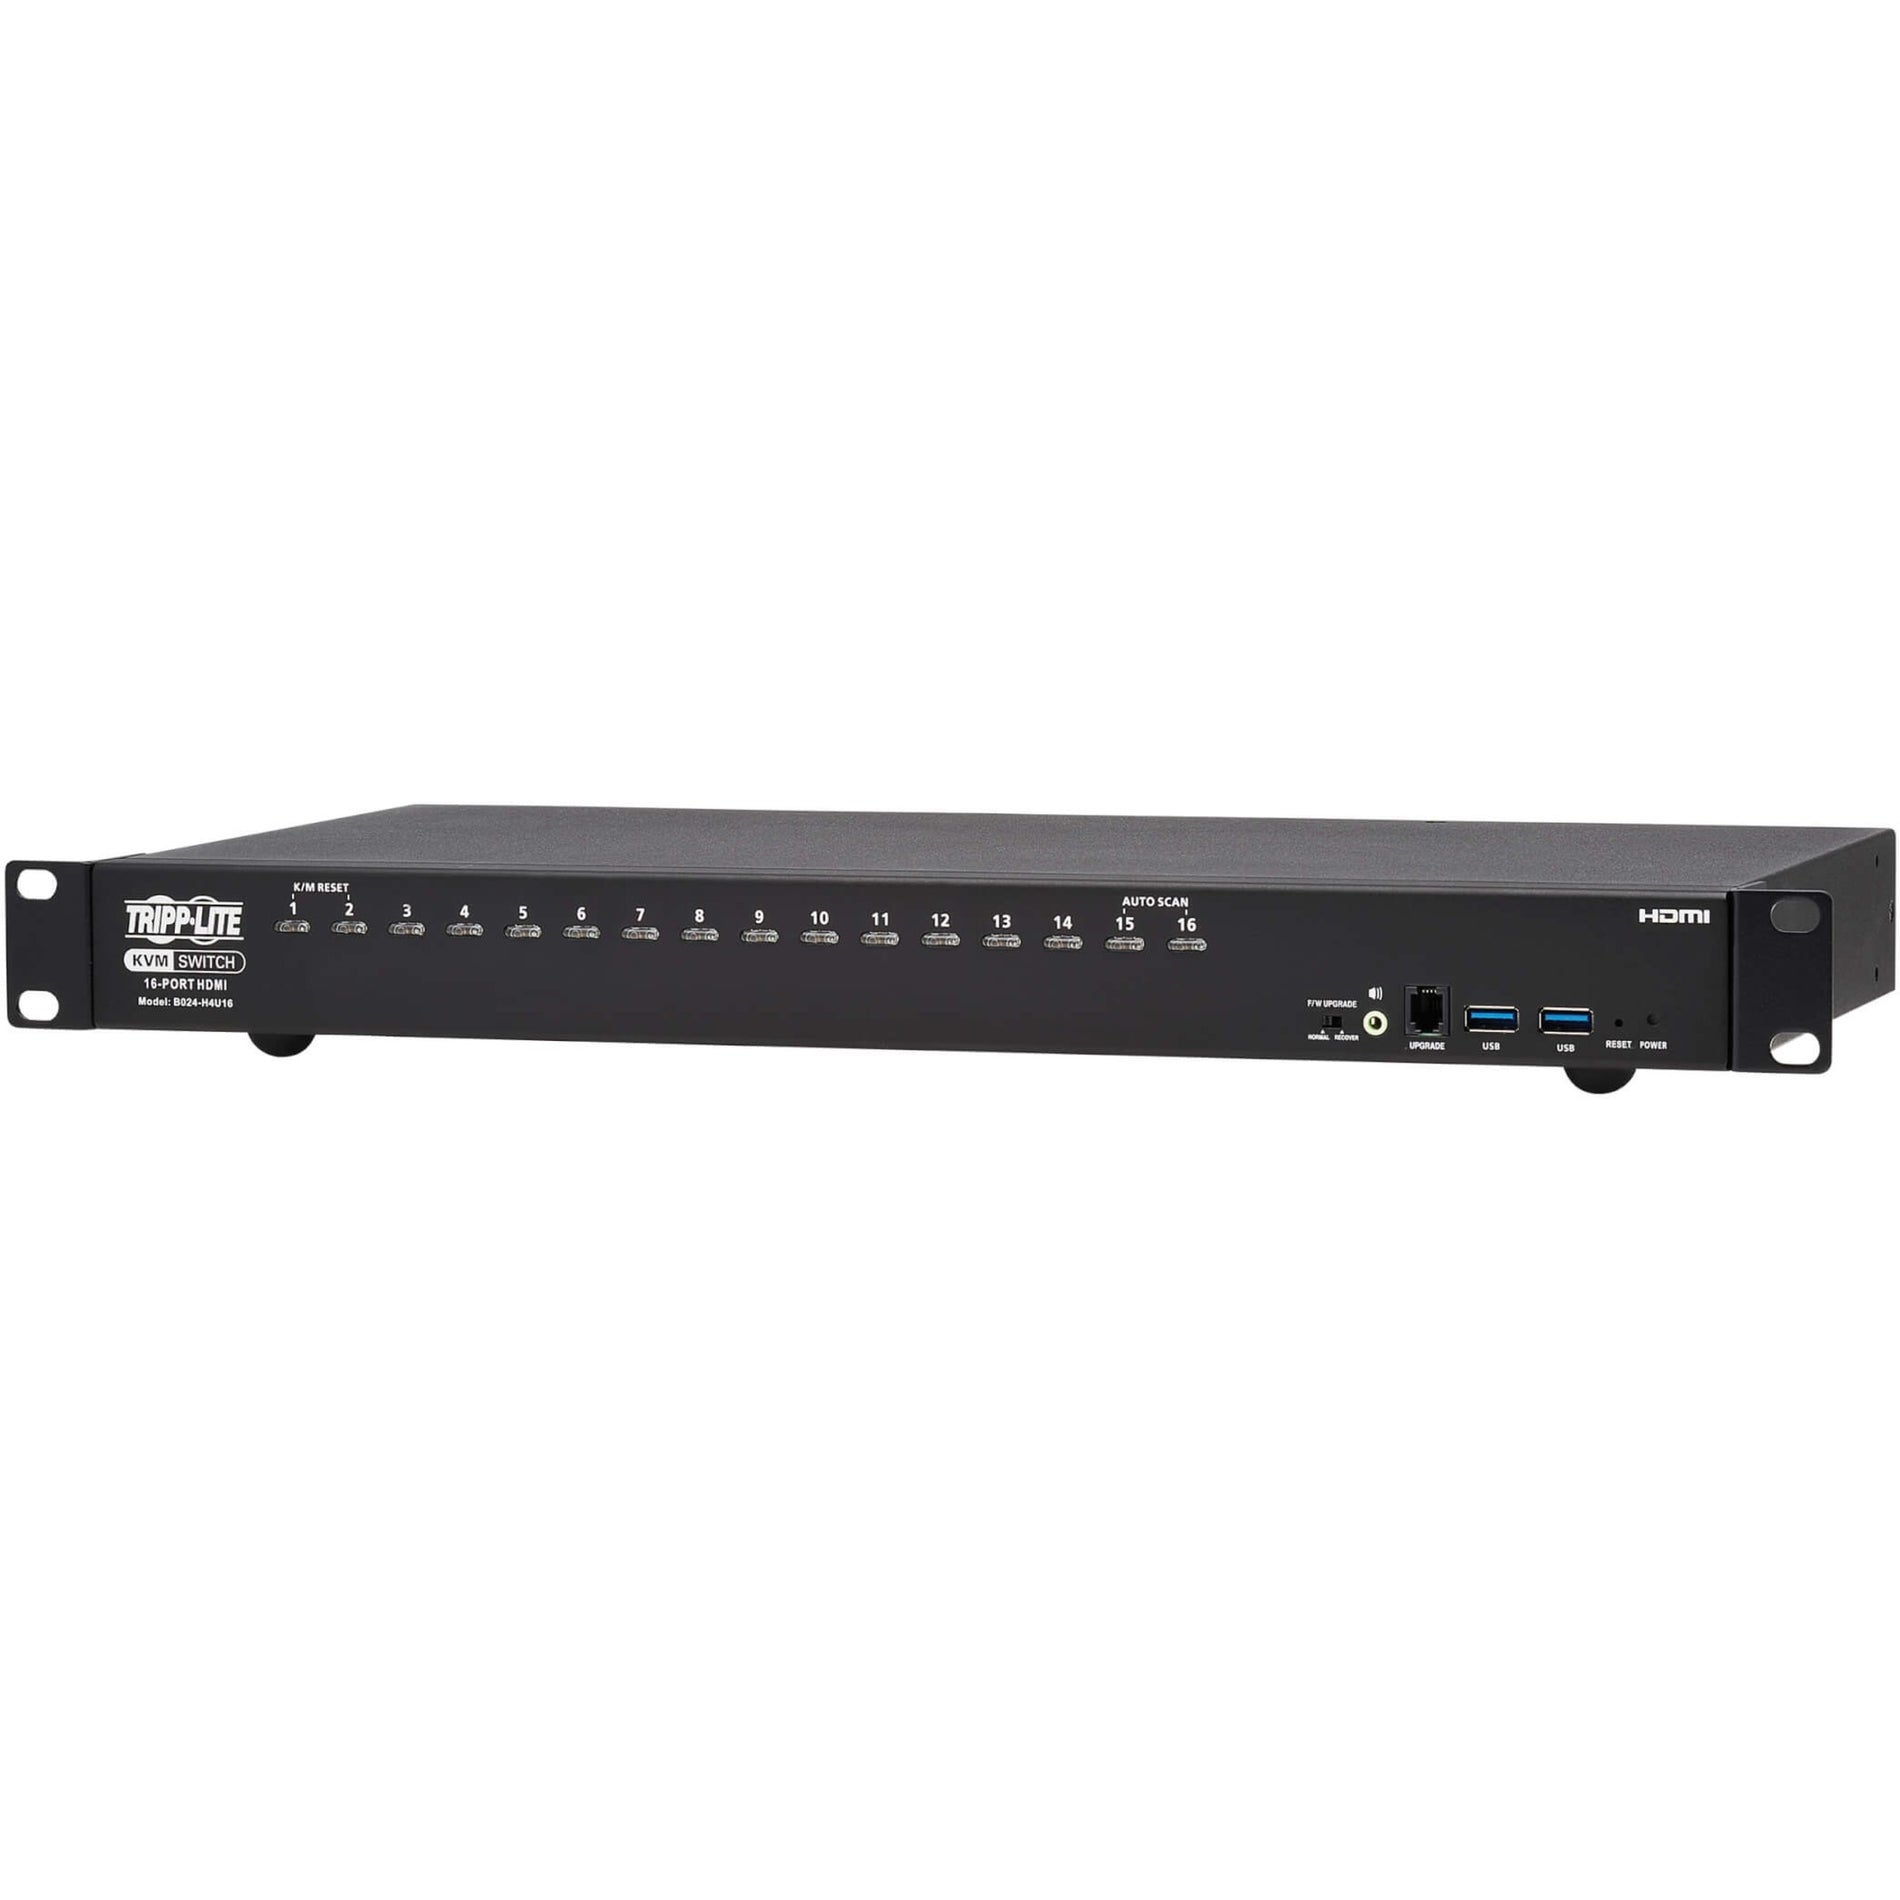 Tripp Lite B024-H4U16 16-Puerto HDMI/USB Conmutador KVM 1U Resolución 4K Compatible con TAA Marca: Tripp Lite